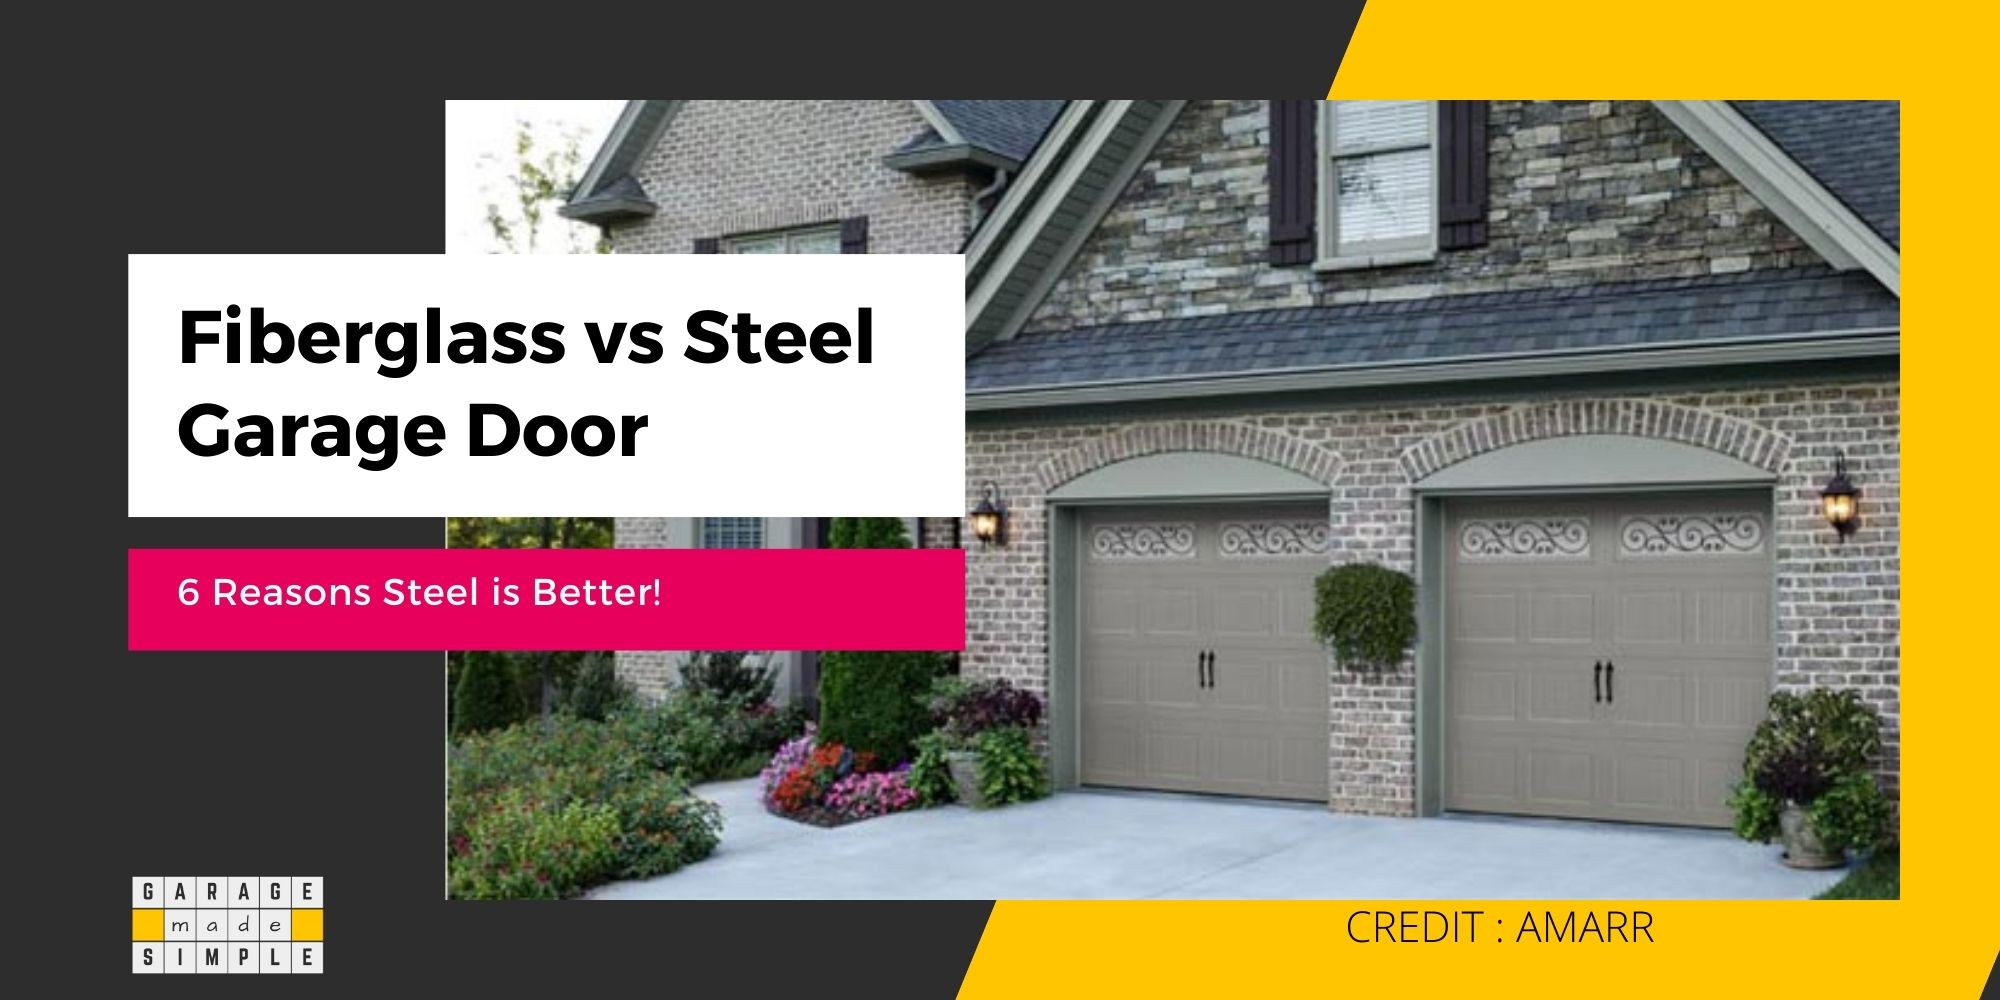 Fiberglass vs Steel Garage Doors (7 Unique Reasons Why Steel is Better!)